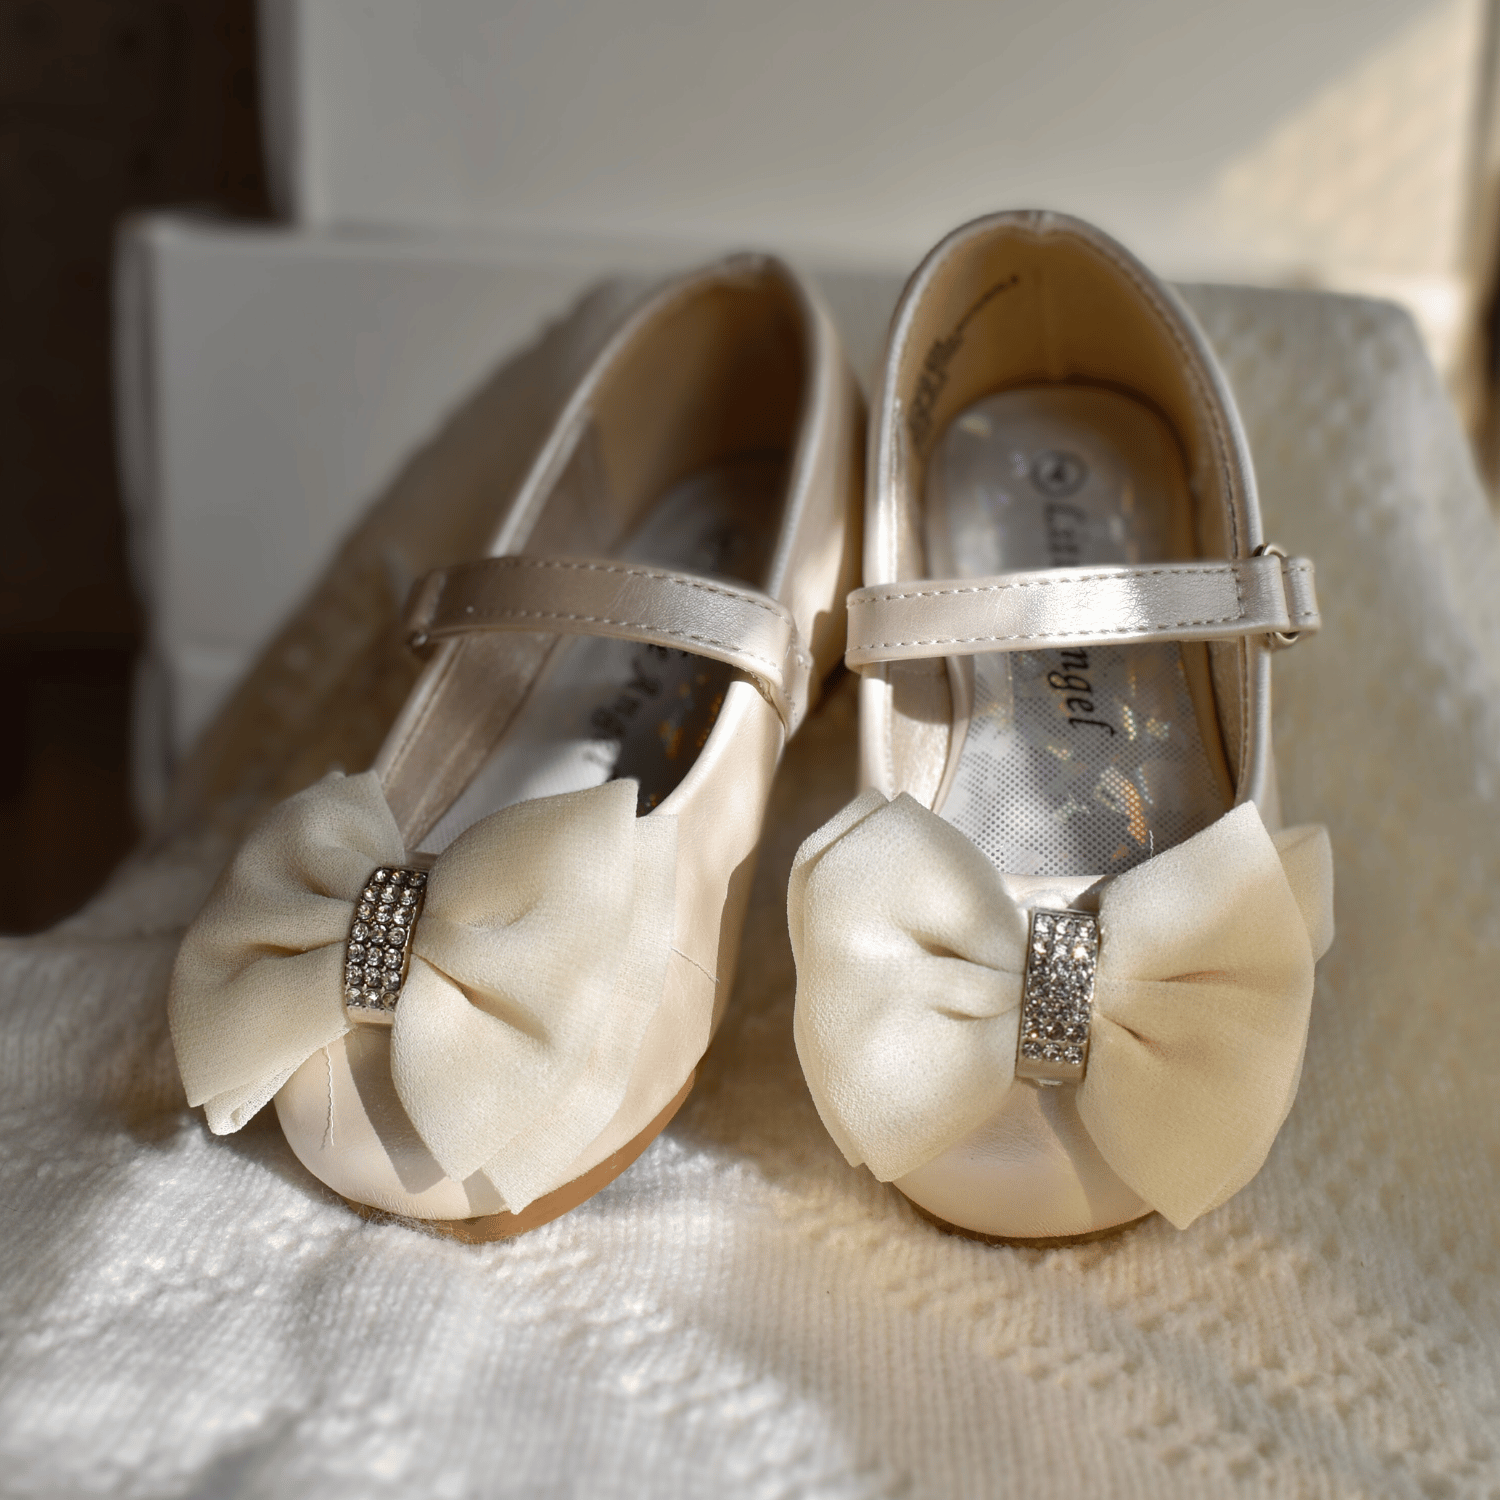 Britt's Ballerina Girls Formal Shoes